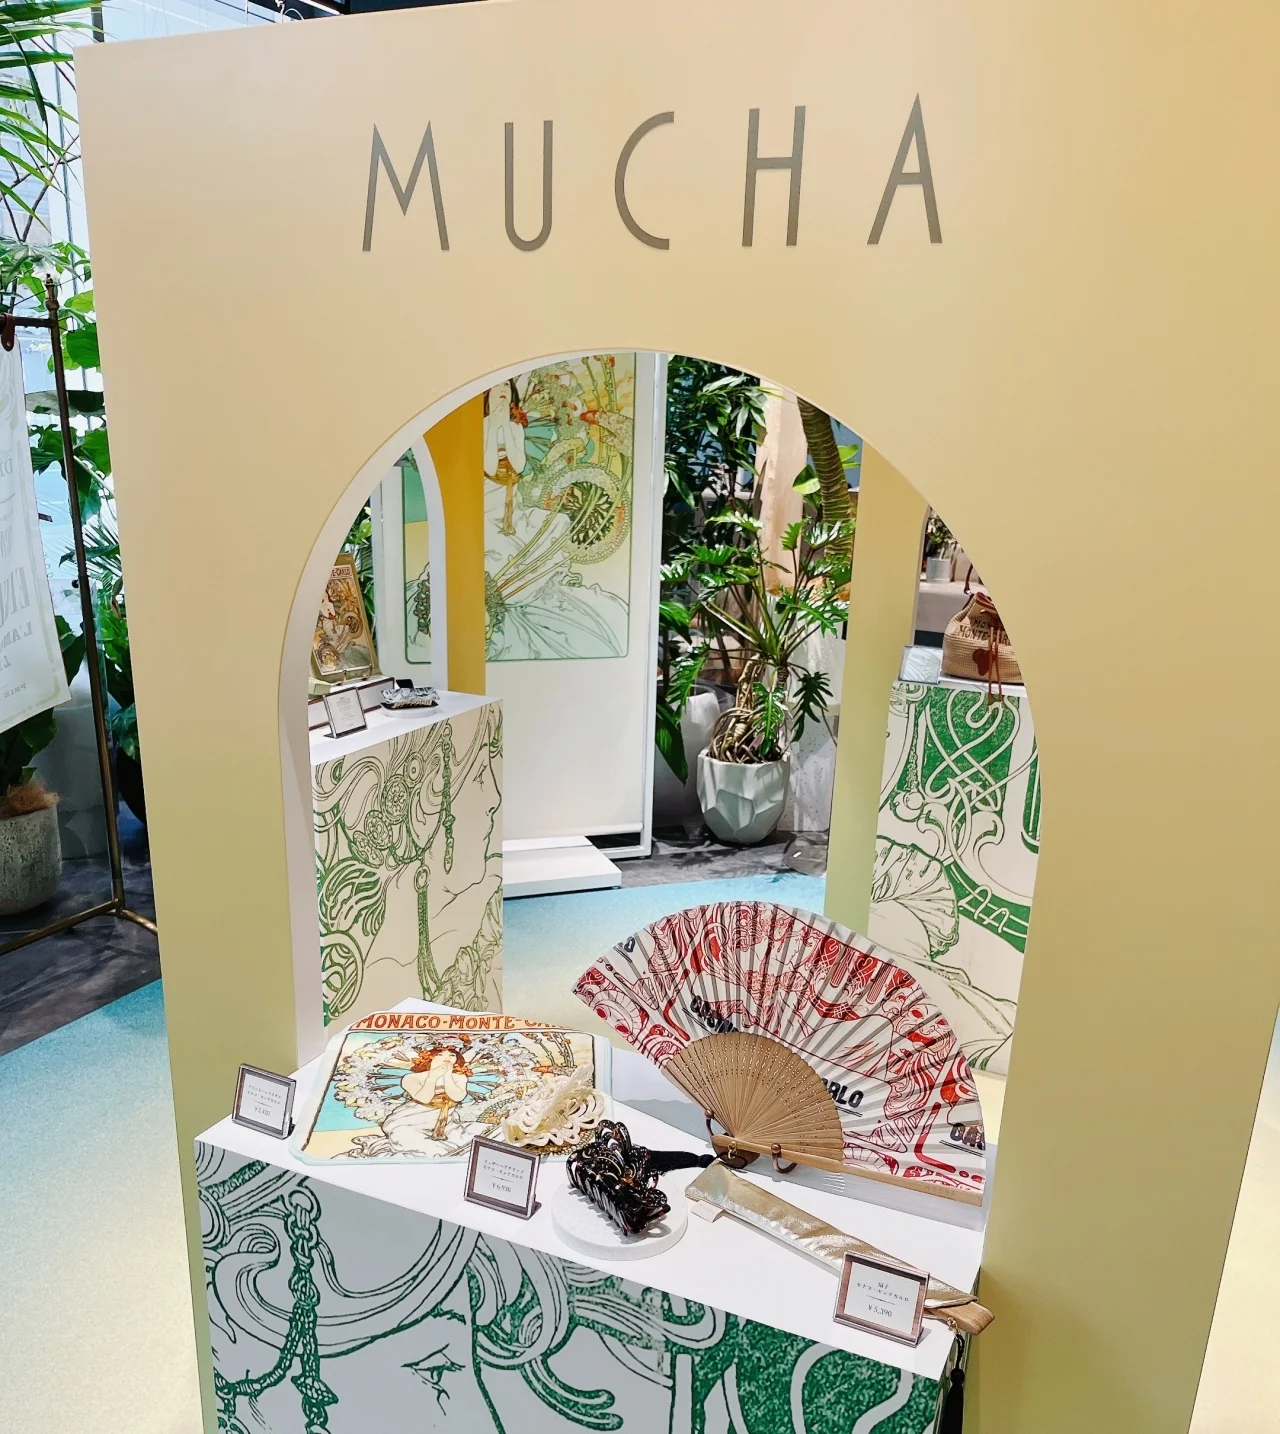 ミュシャのコレクションはアートピースともいうべきグッズも数多く展開しているんです。ミュシャ　MUCHA　最新コレクションでは、「モナコ・モンテカルロ」扇子やハンドタオルもお目見え。